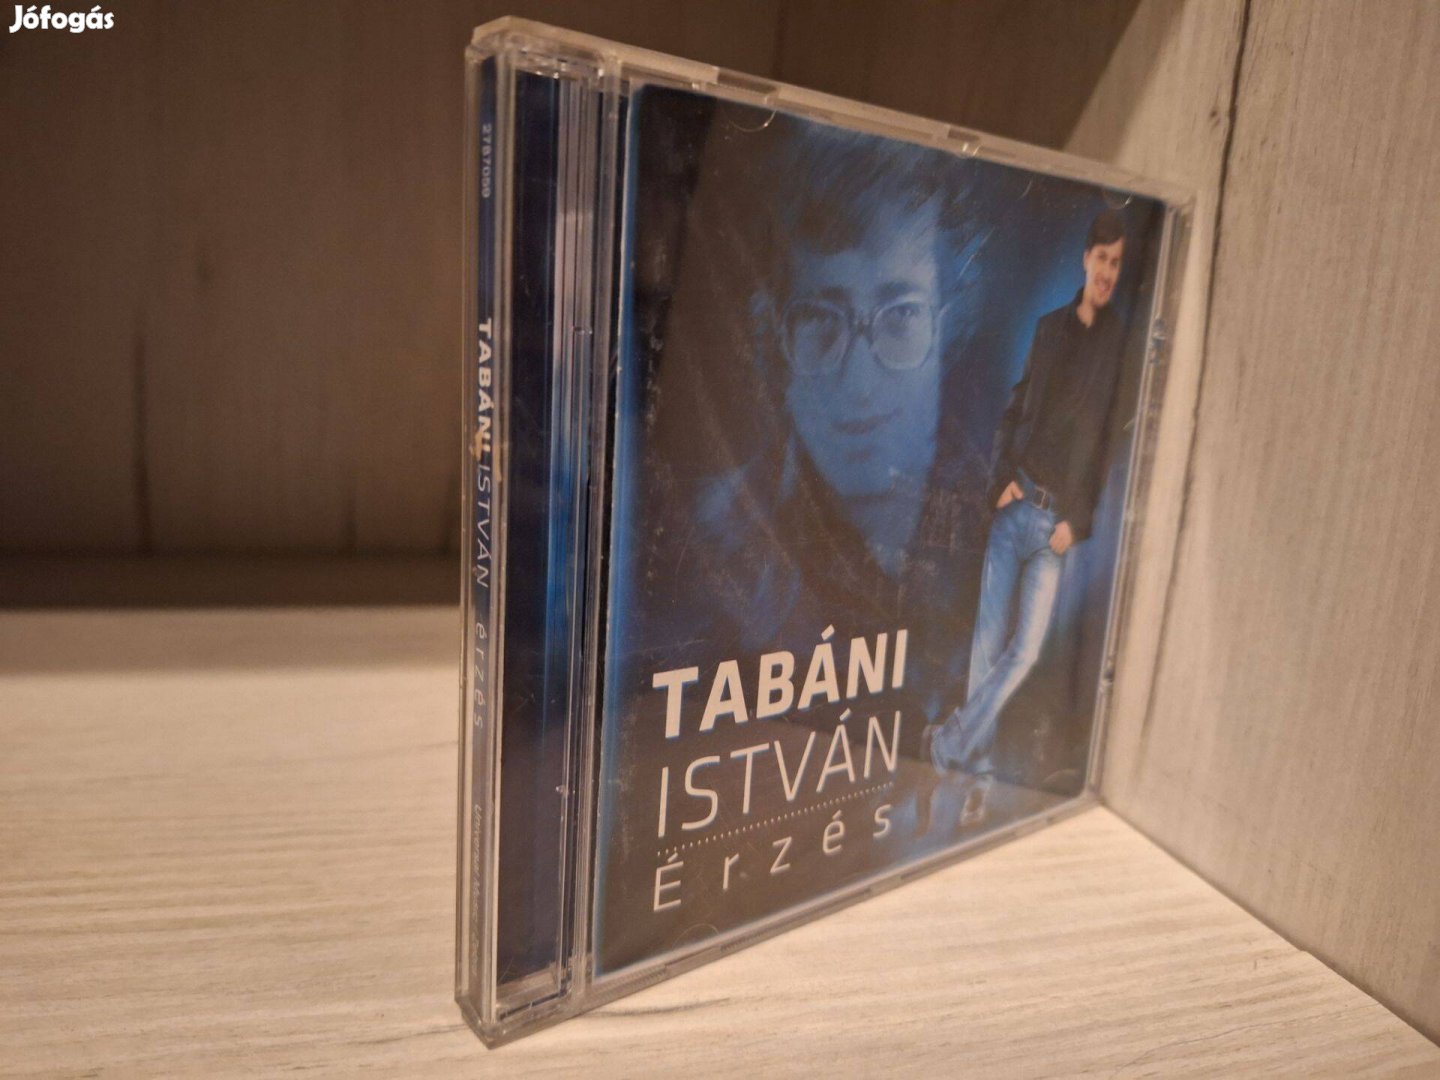 Tabáni István - Érzés CD